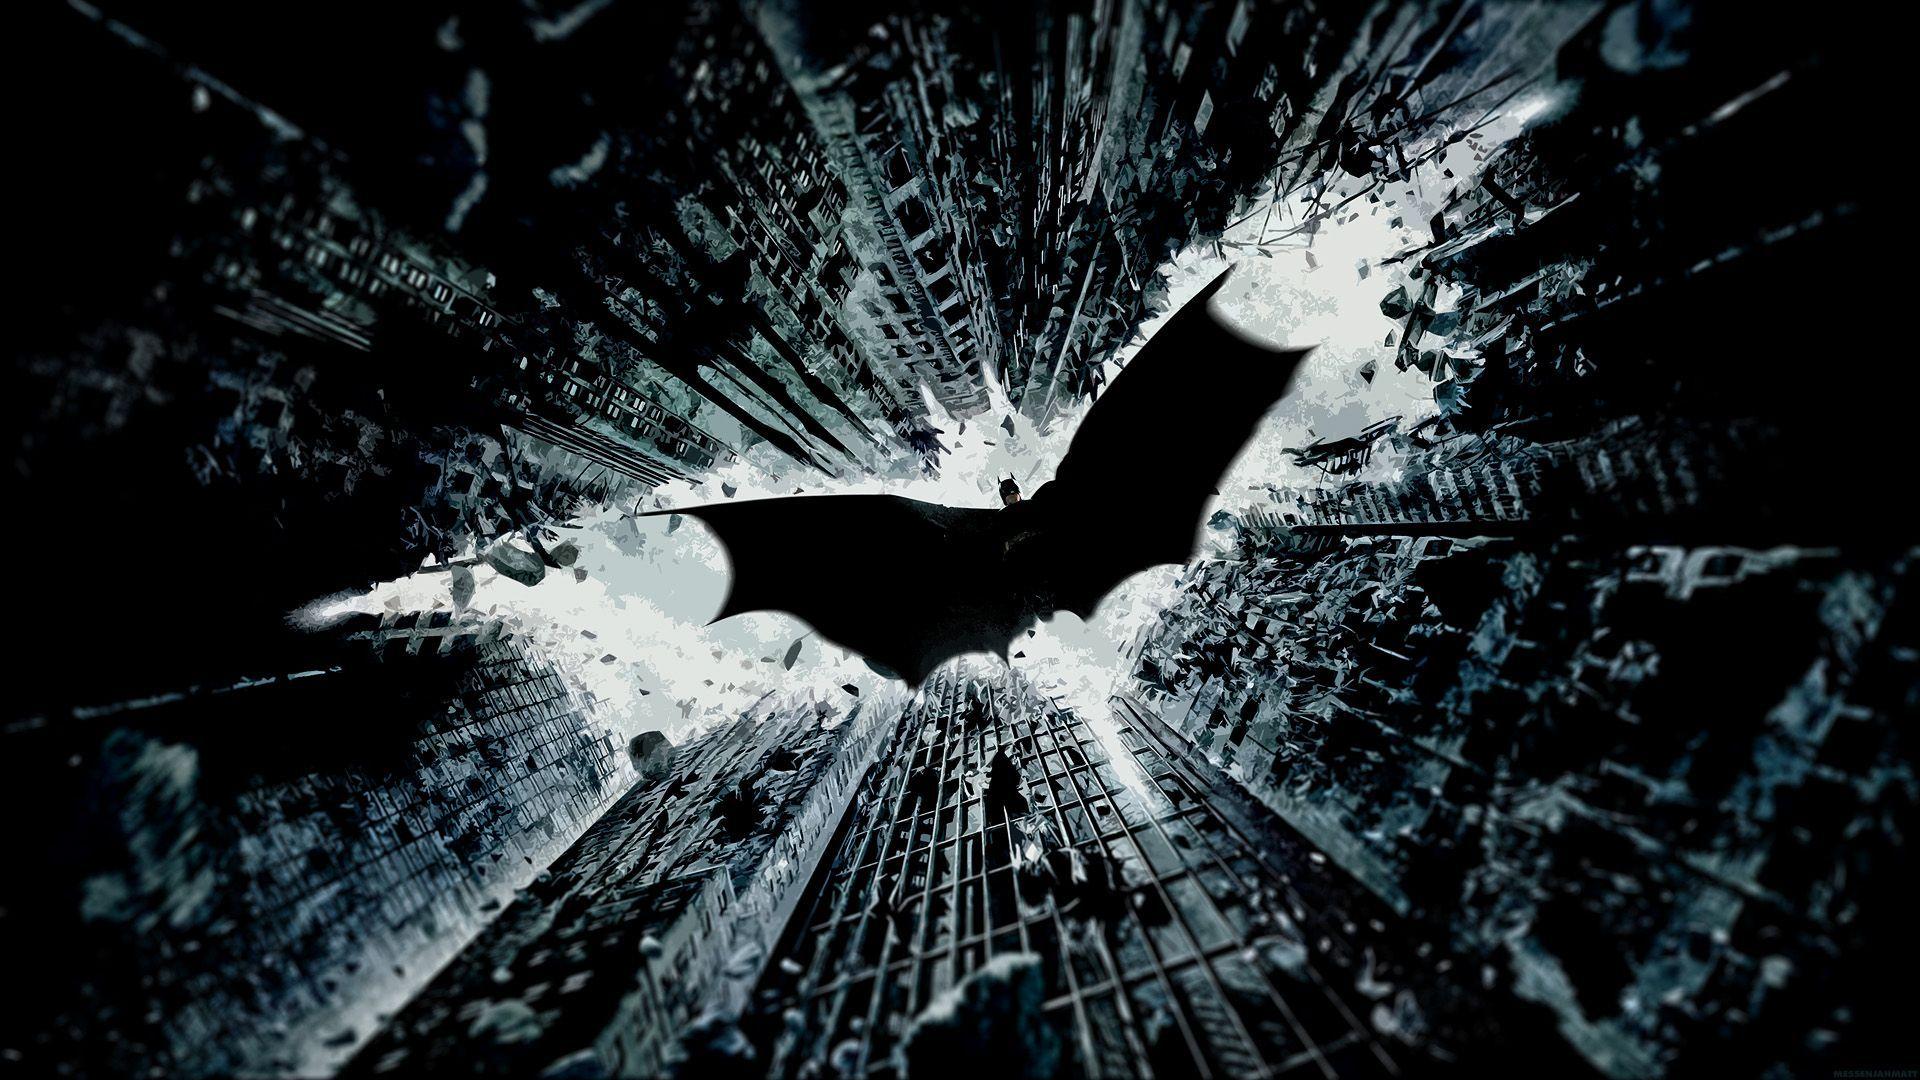 Dark Knight Rises HD Wallpapers - Top Free Dark Knight Rises HD Backgrounds  - WallpaperAccess